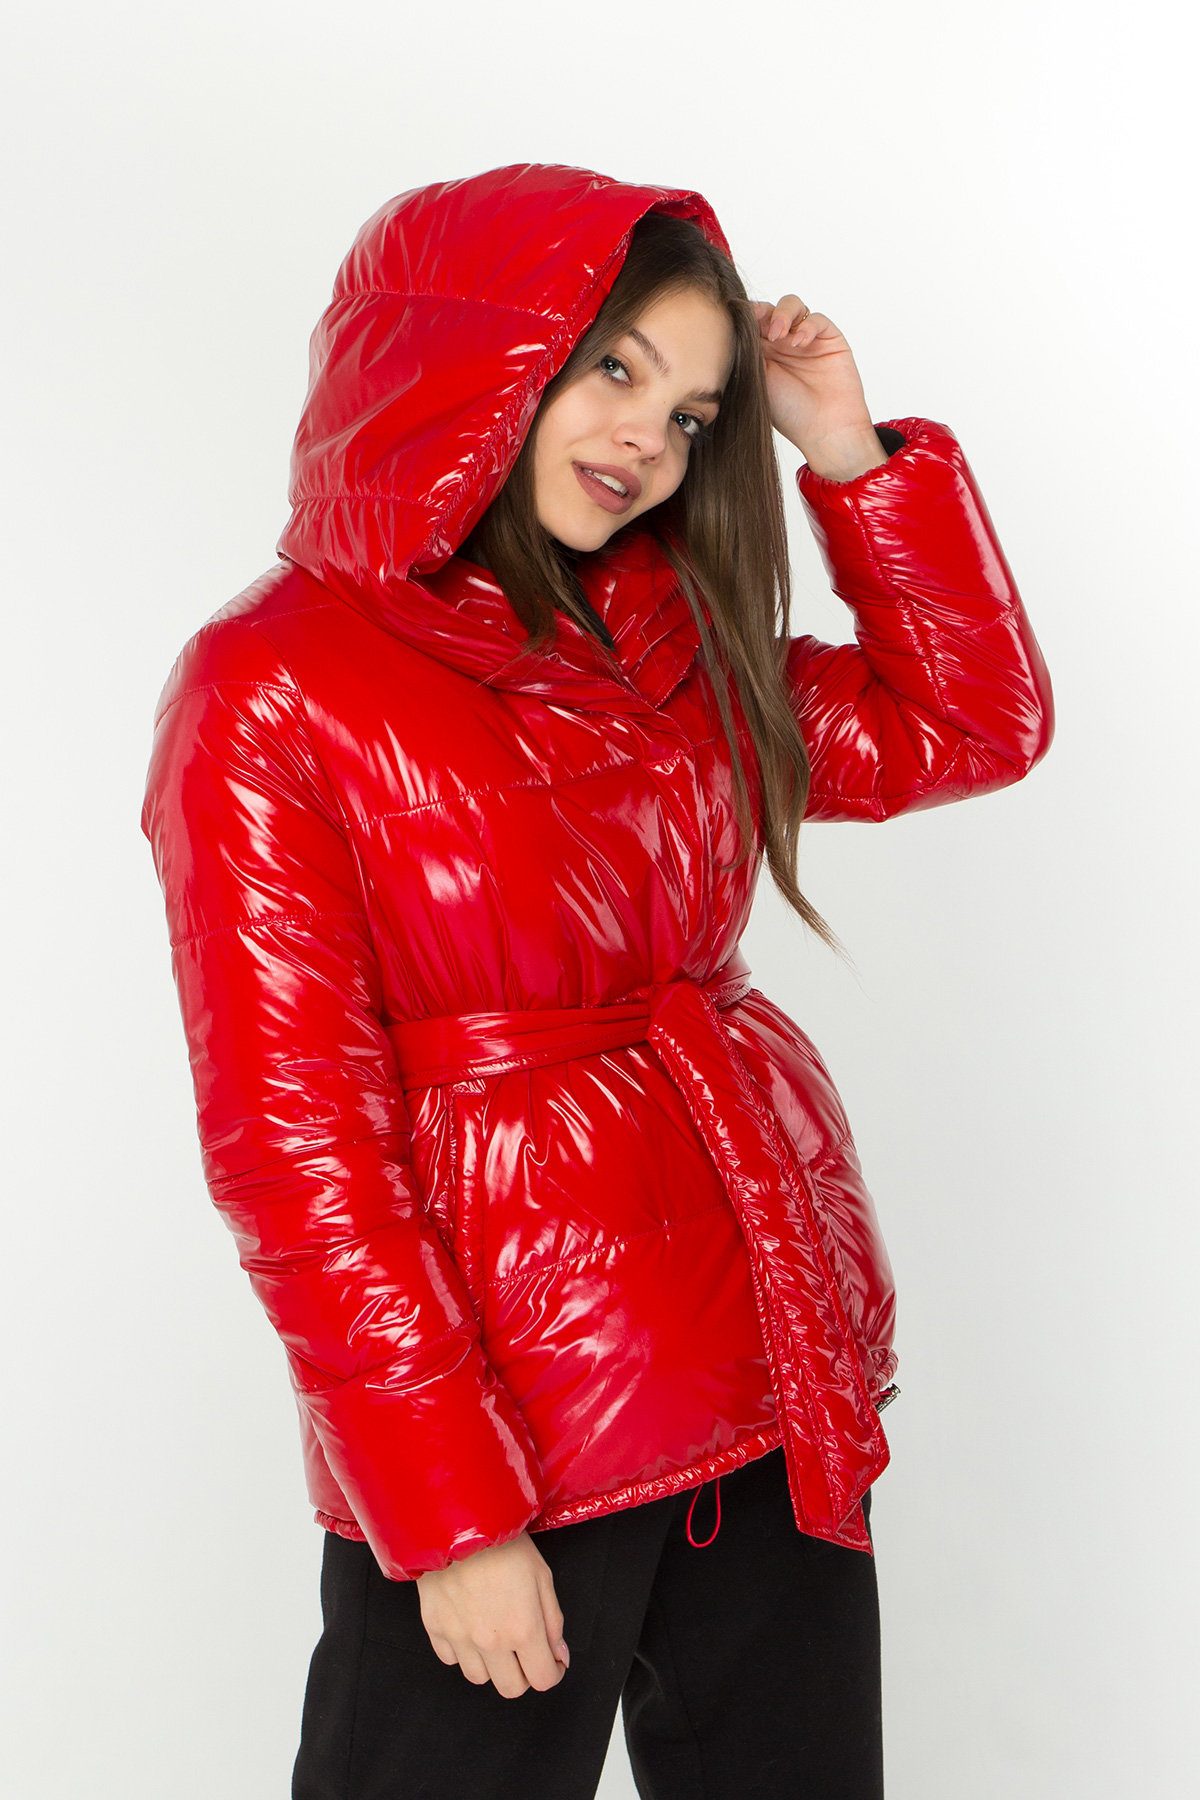 Лаковая куртка пуховик с поясом Бумер 8696 АРТ. 45034 Цвет: Красный - фото 6, интернет магазин tm-modus.ru